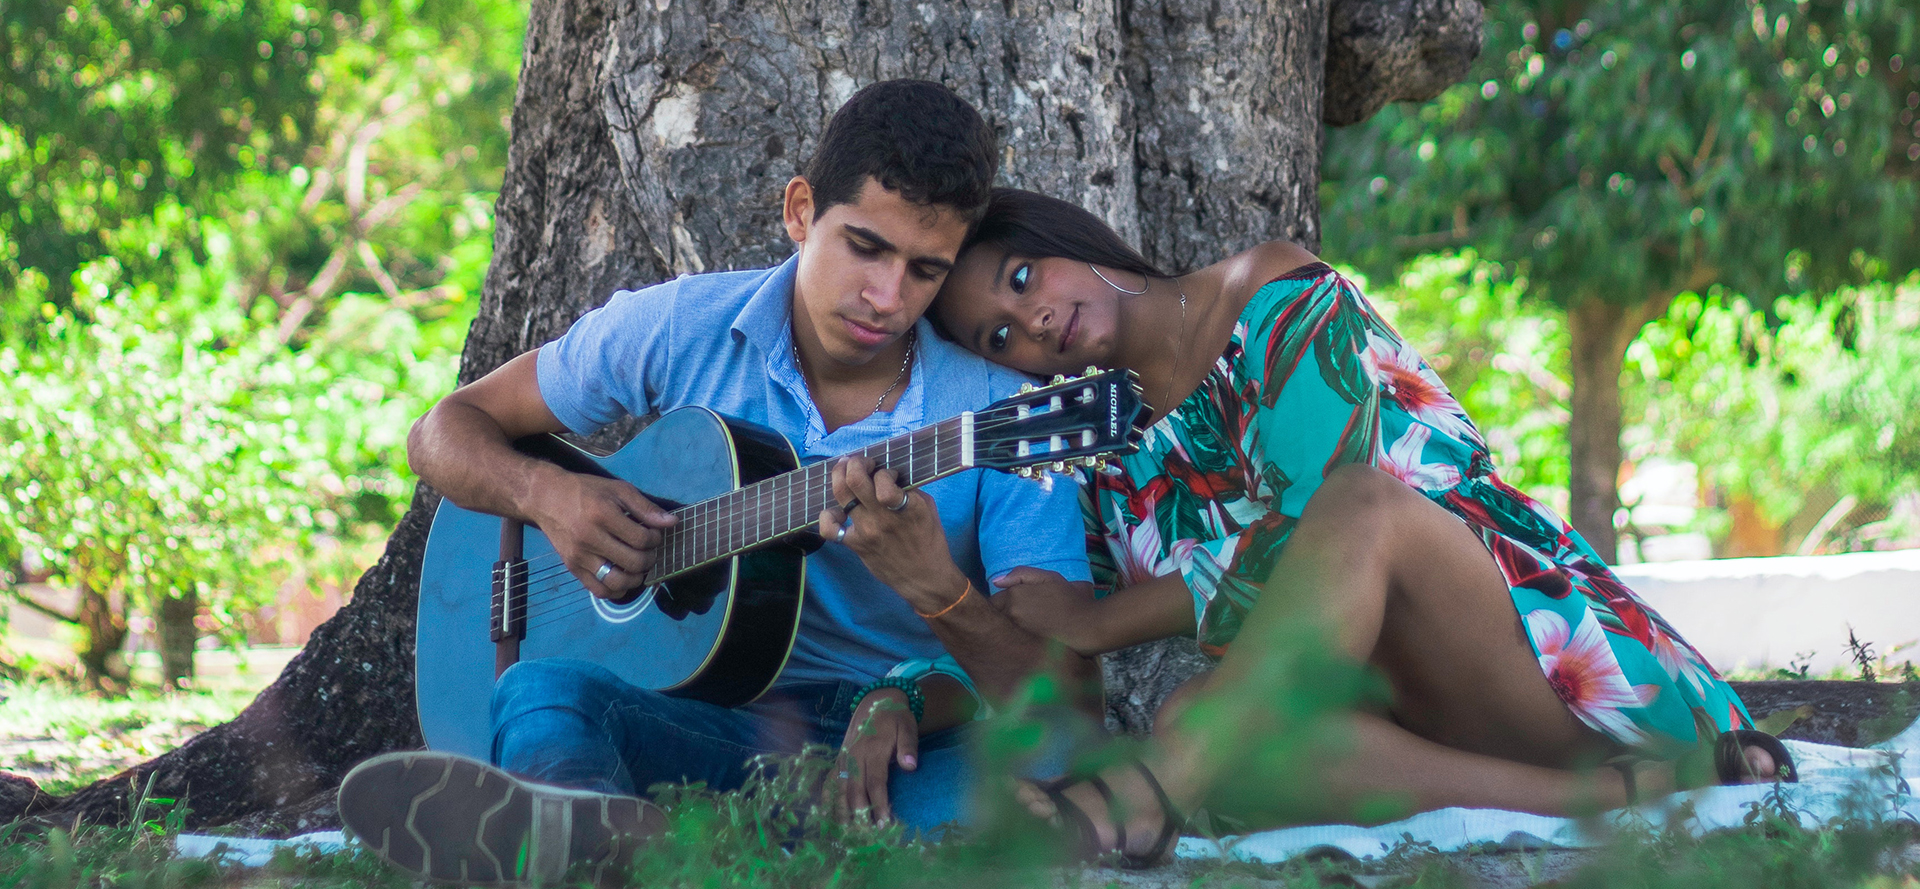 Coppia latina con chitarra in un appuntamento romantico.